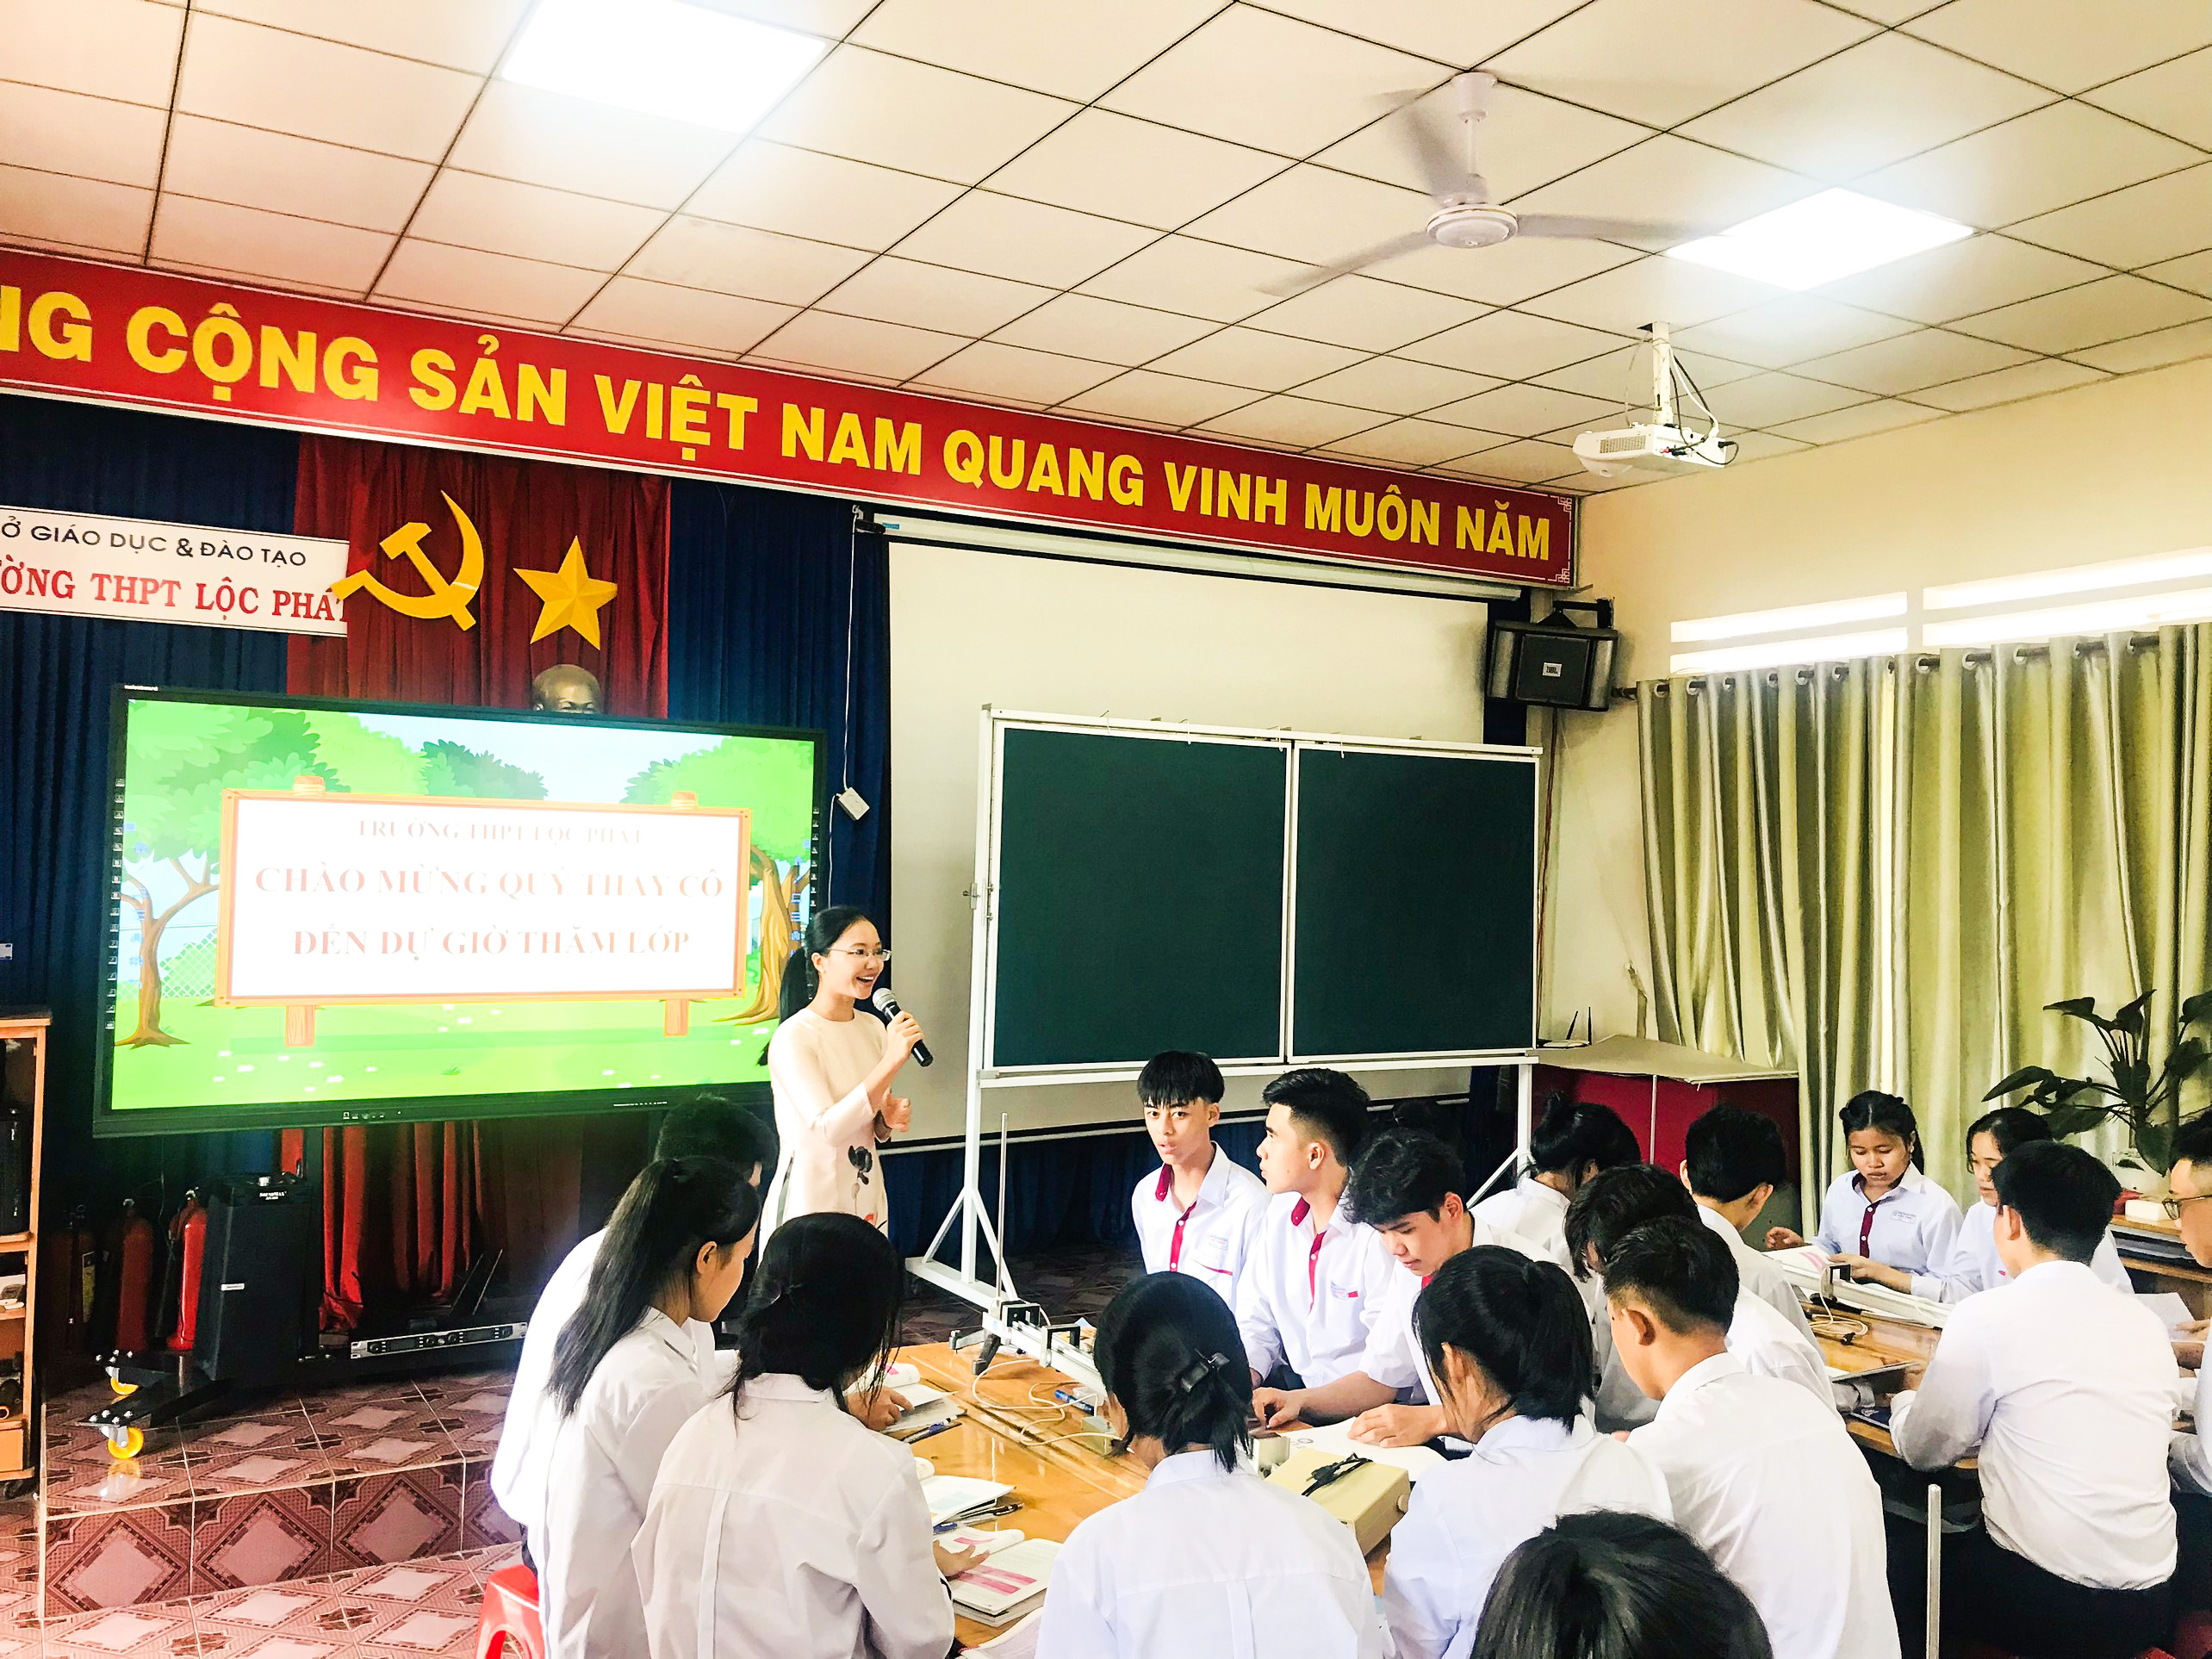 Sở Giáo dục và Đào tạo Lâm Đồng tổ chức hội nghị Tập huấn nâng cao năng lực dạy học Chương trình giáo dục phổ thông 2018